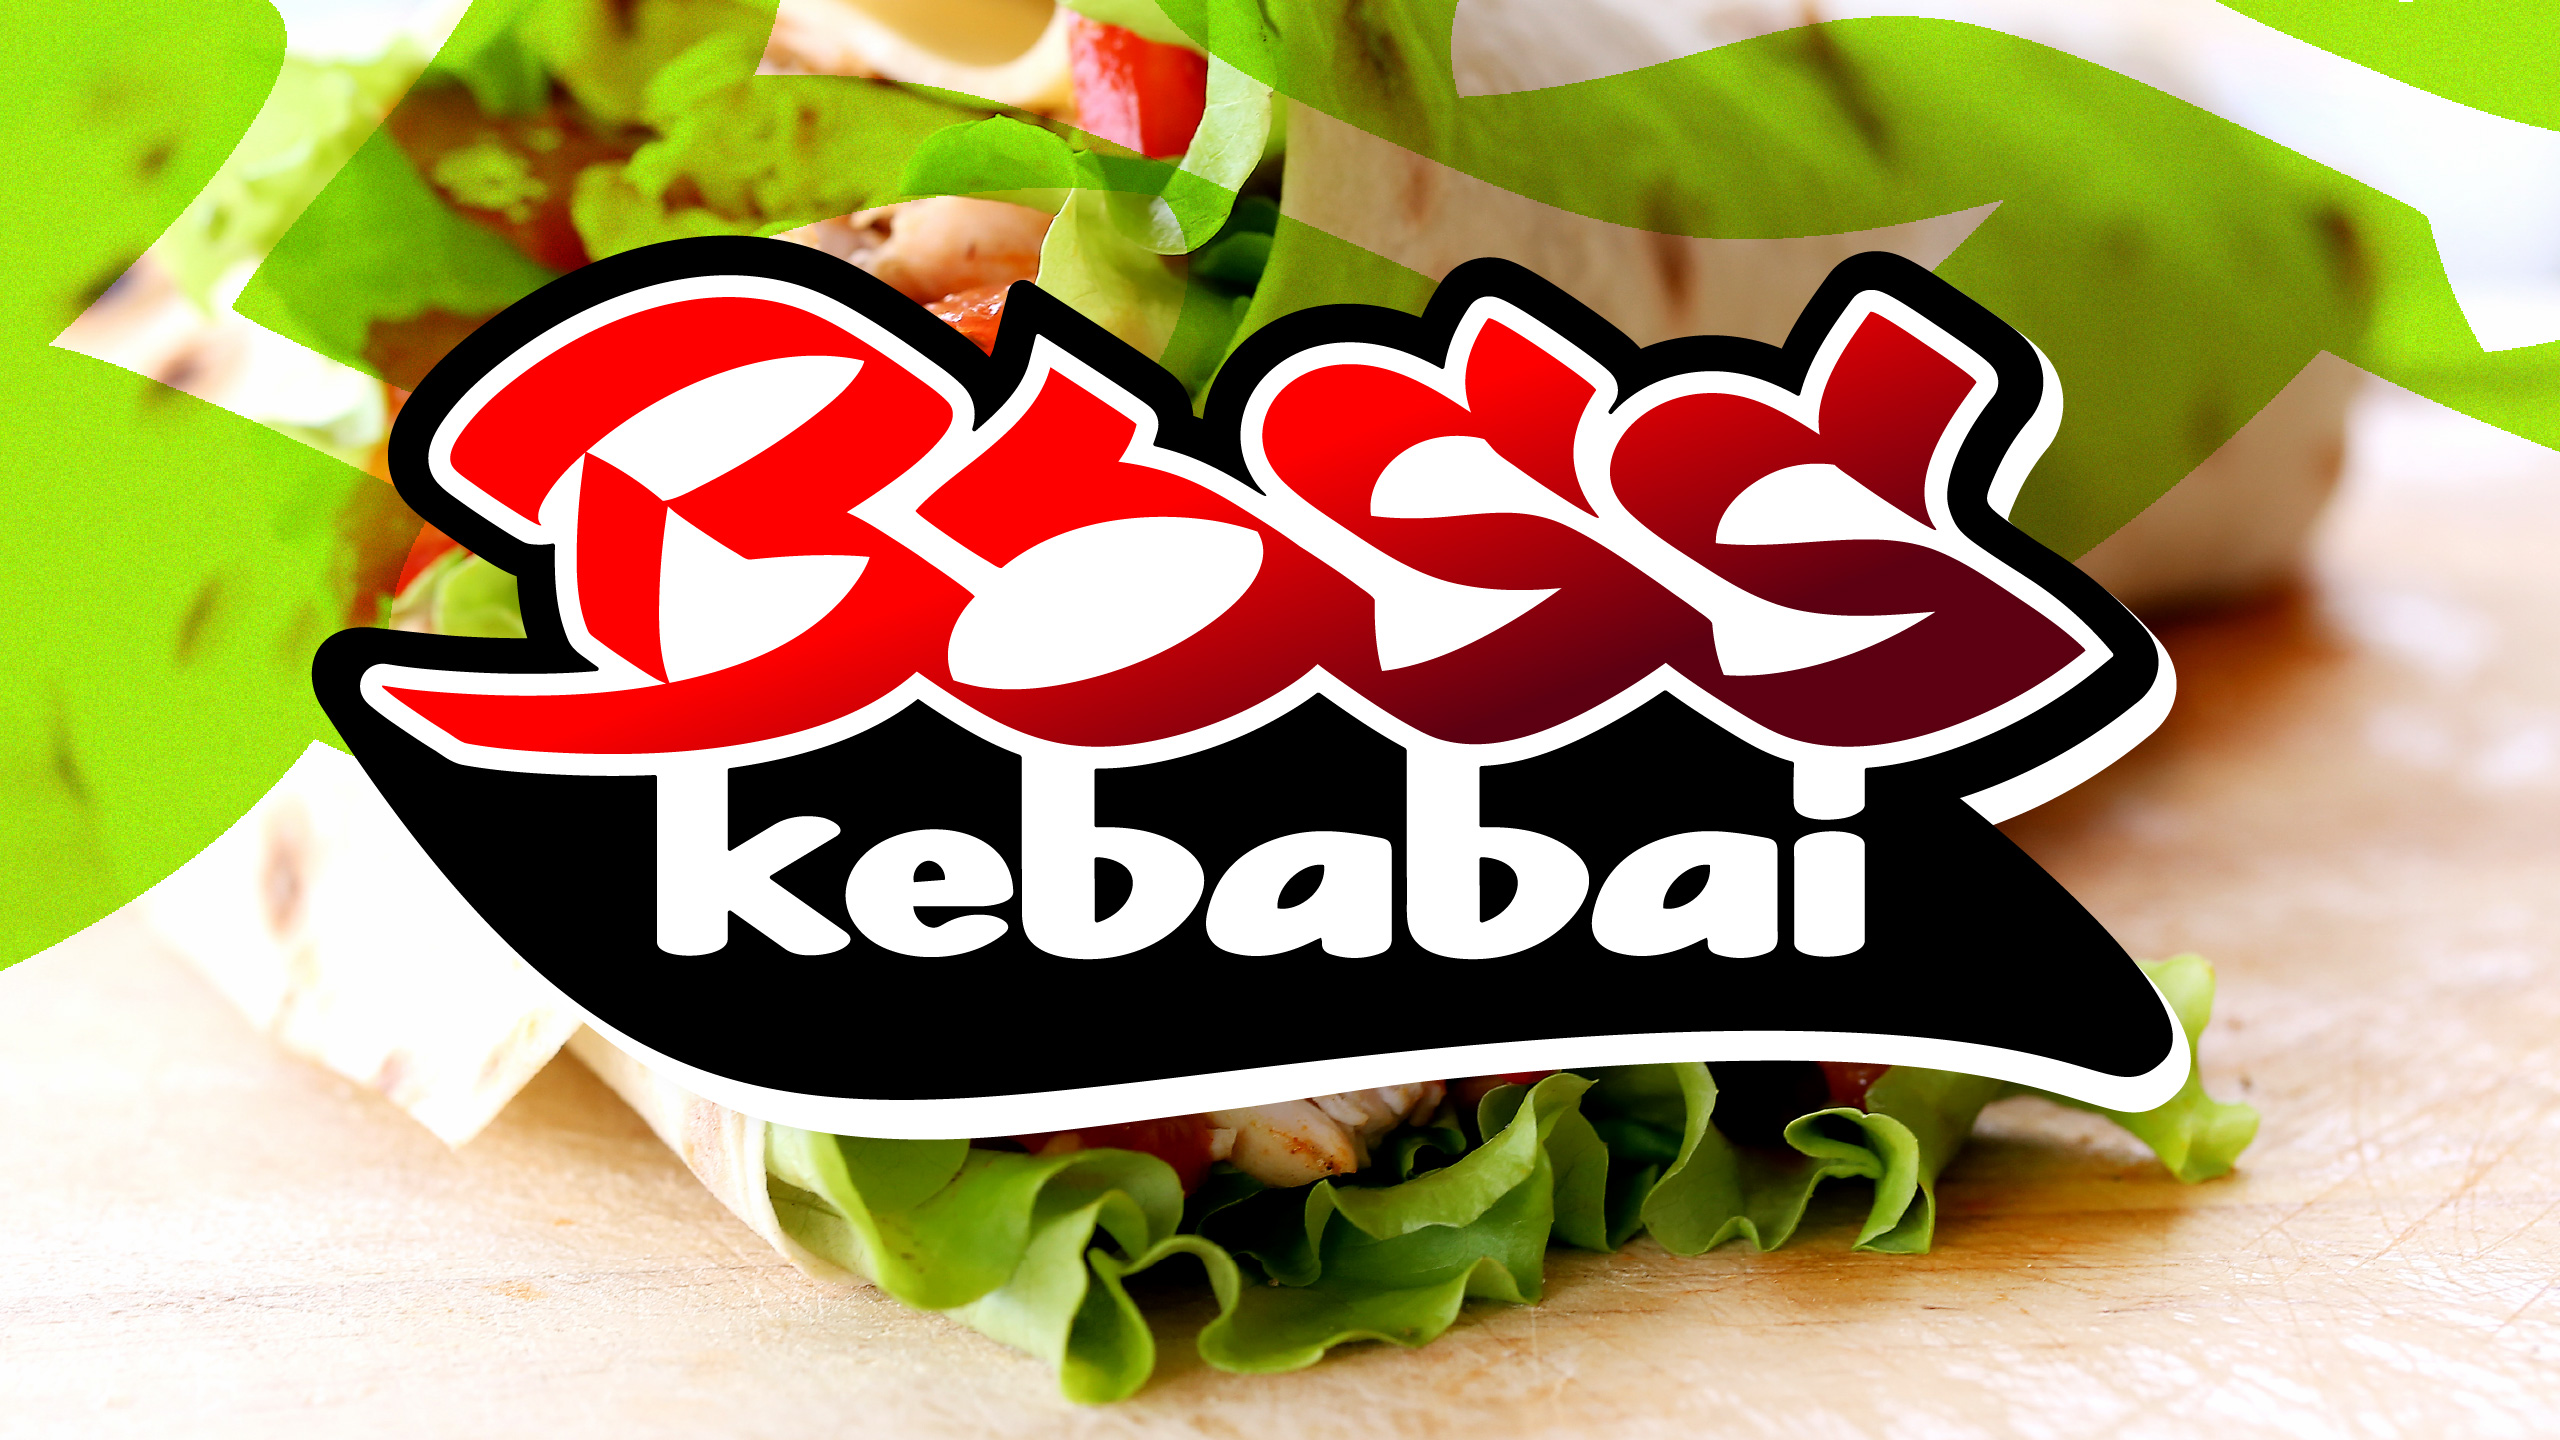 BOSS kebabai 4 branding - Logobou Desing